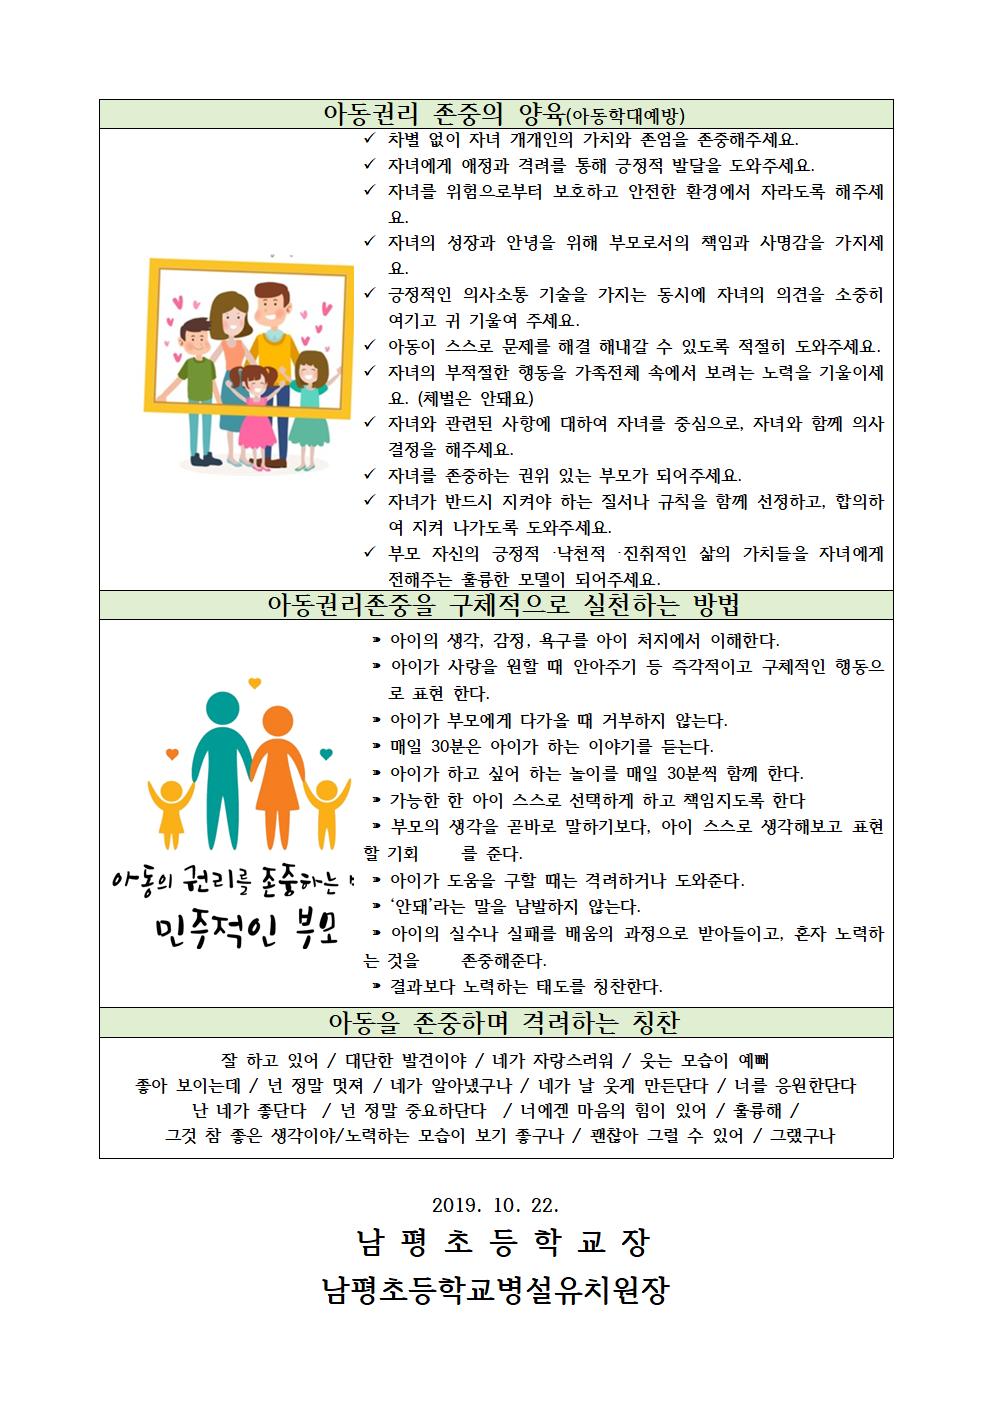 2019-235가정에서의 아동 권리 실천 방법 안내002